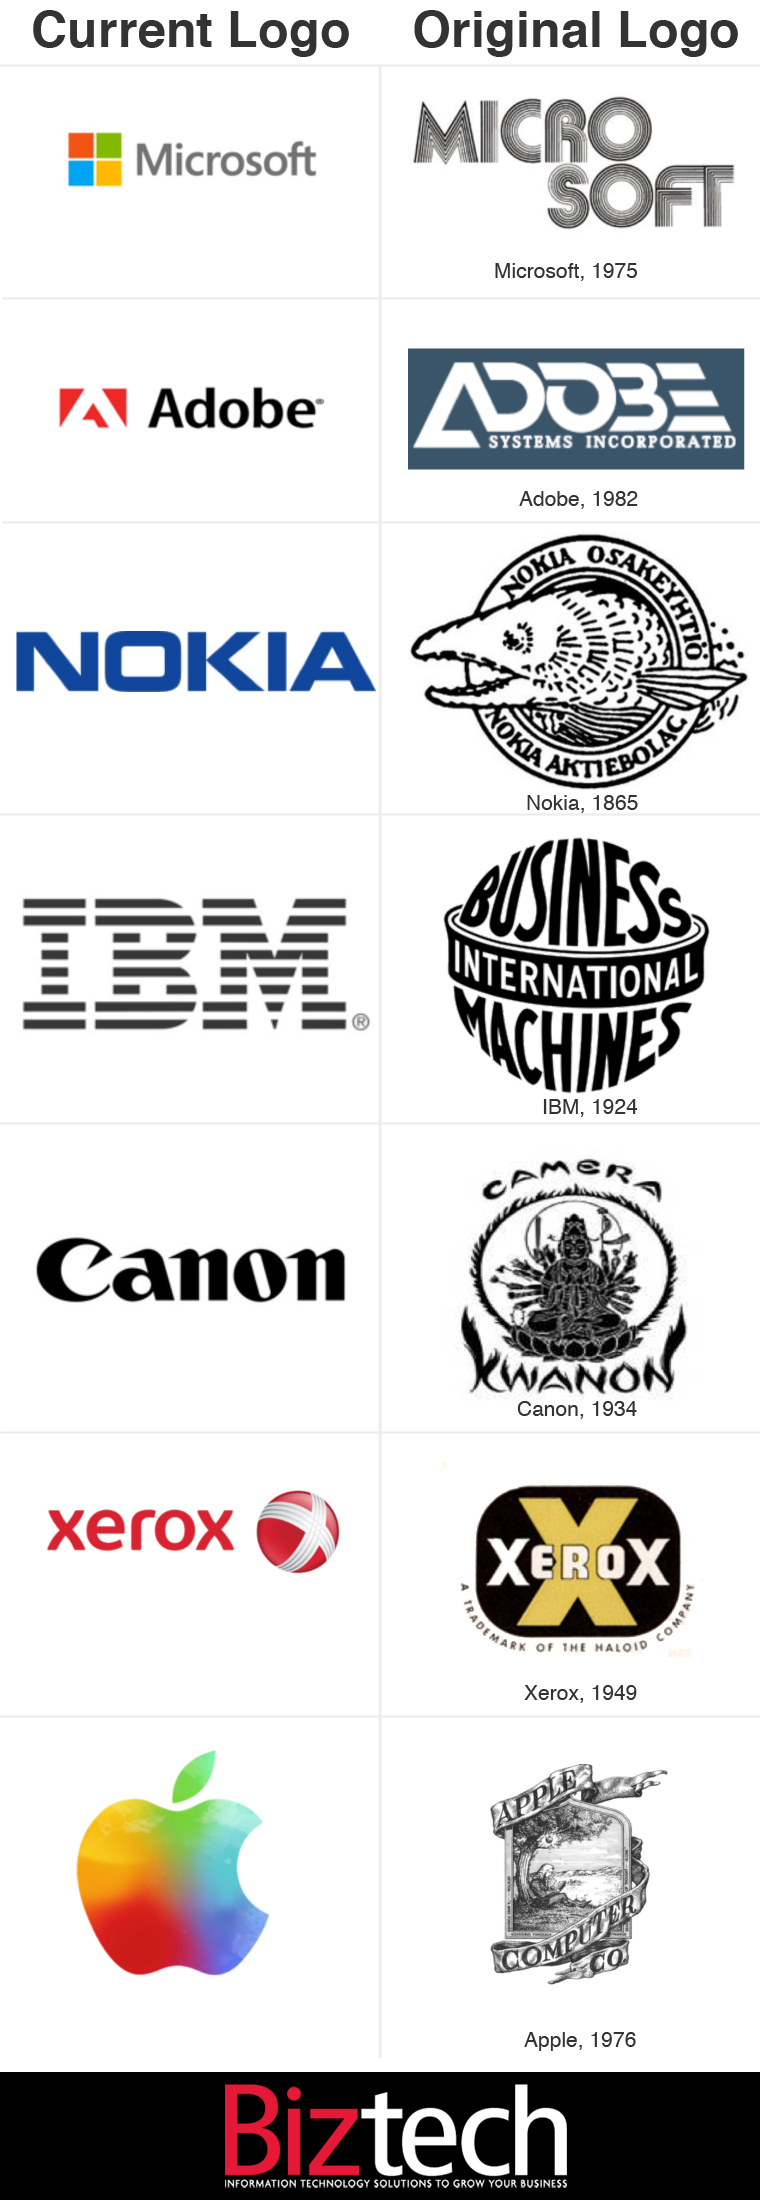 Tech company logo changes